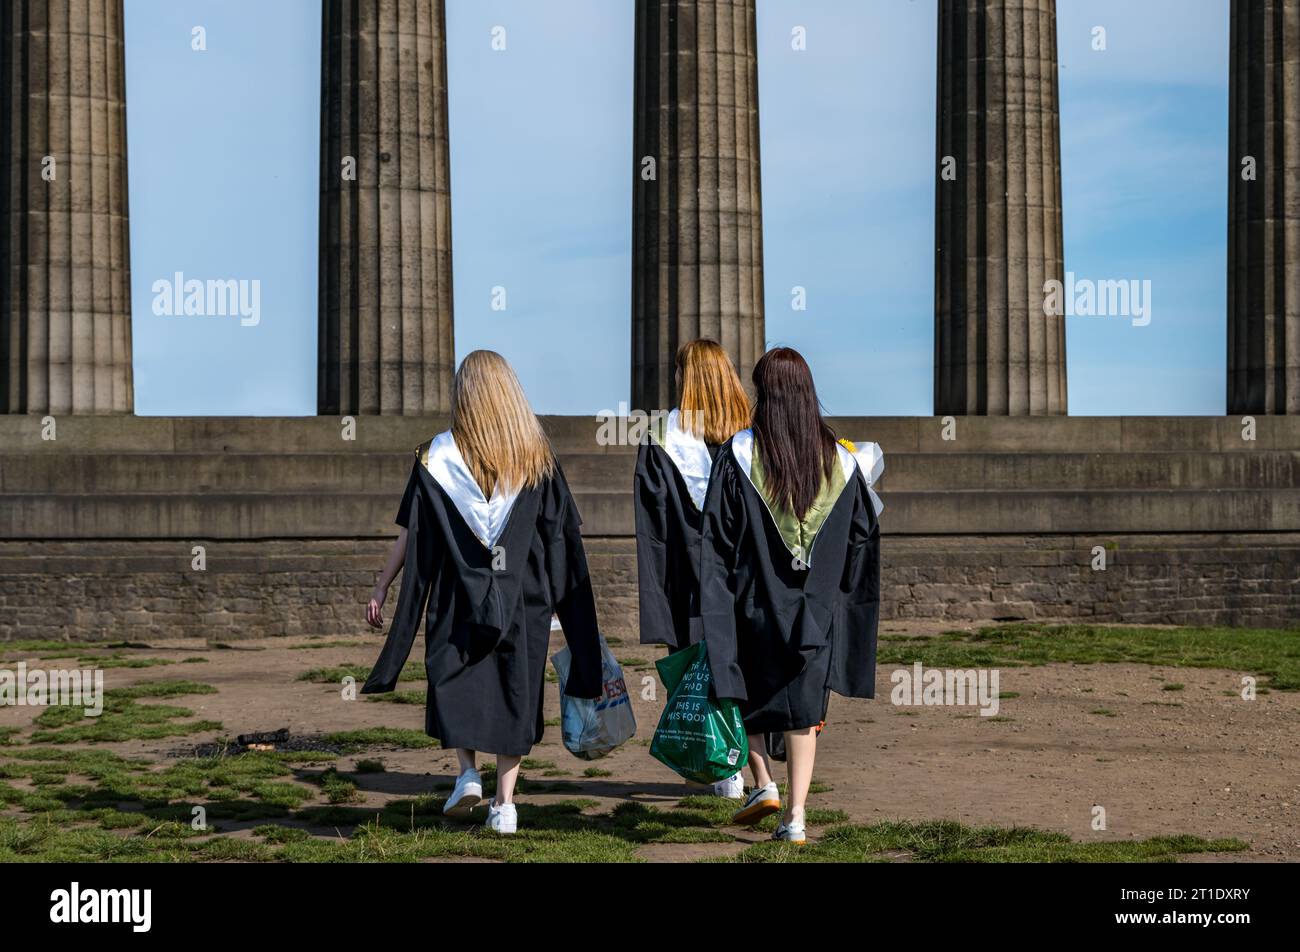 Étudiants asiatiques célébrant le jour de la remise des diplômes, National Monument, Calton Hill, Édimbourg, Écosse, ROYAUME-UNI Banque D'Images